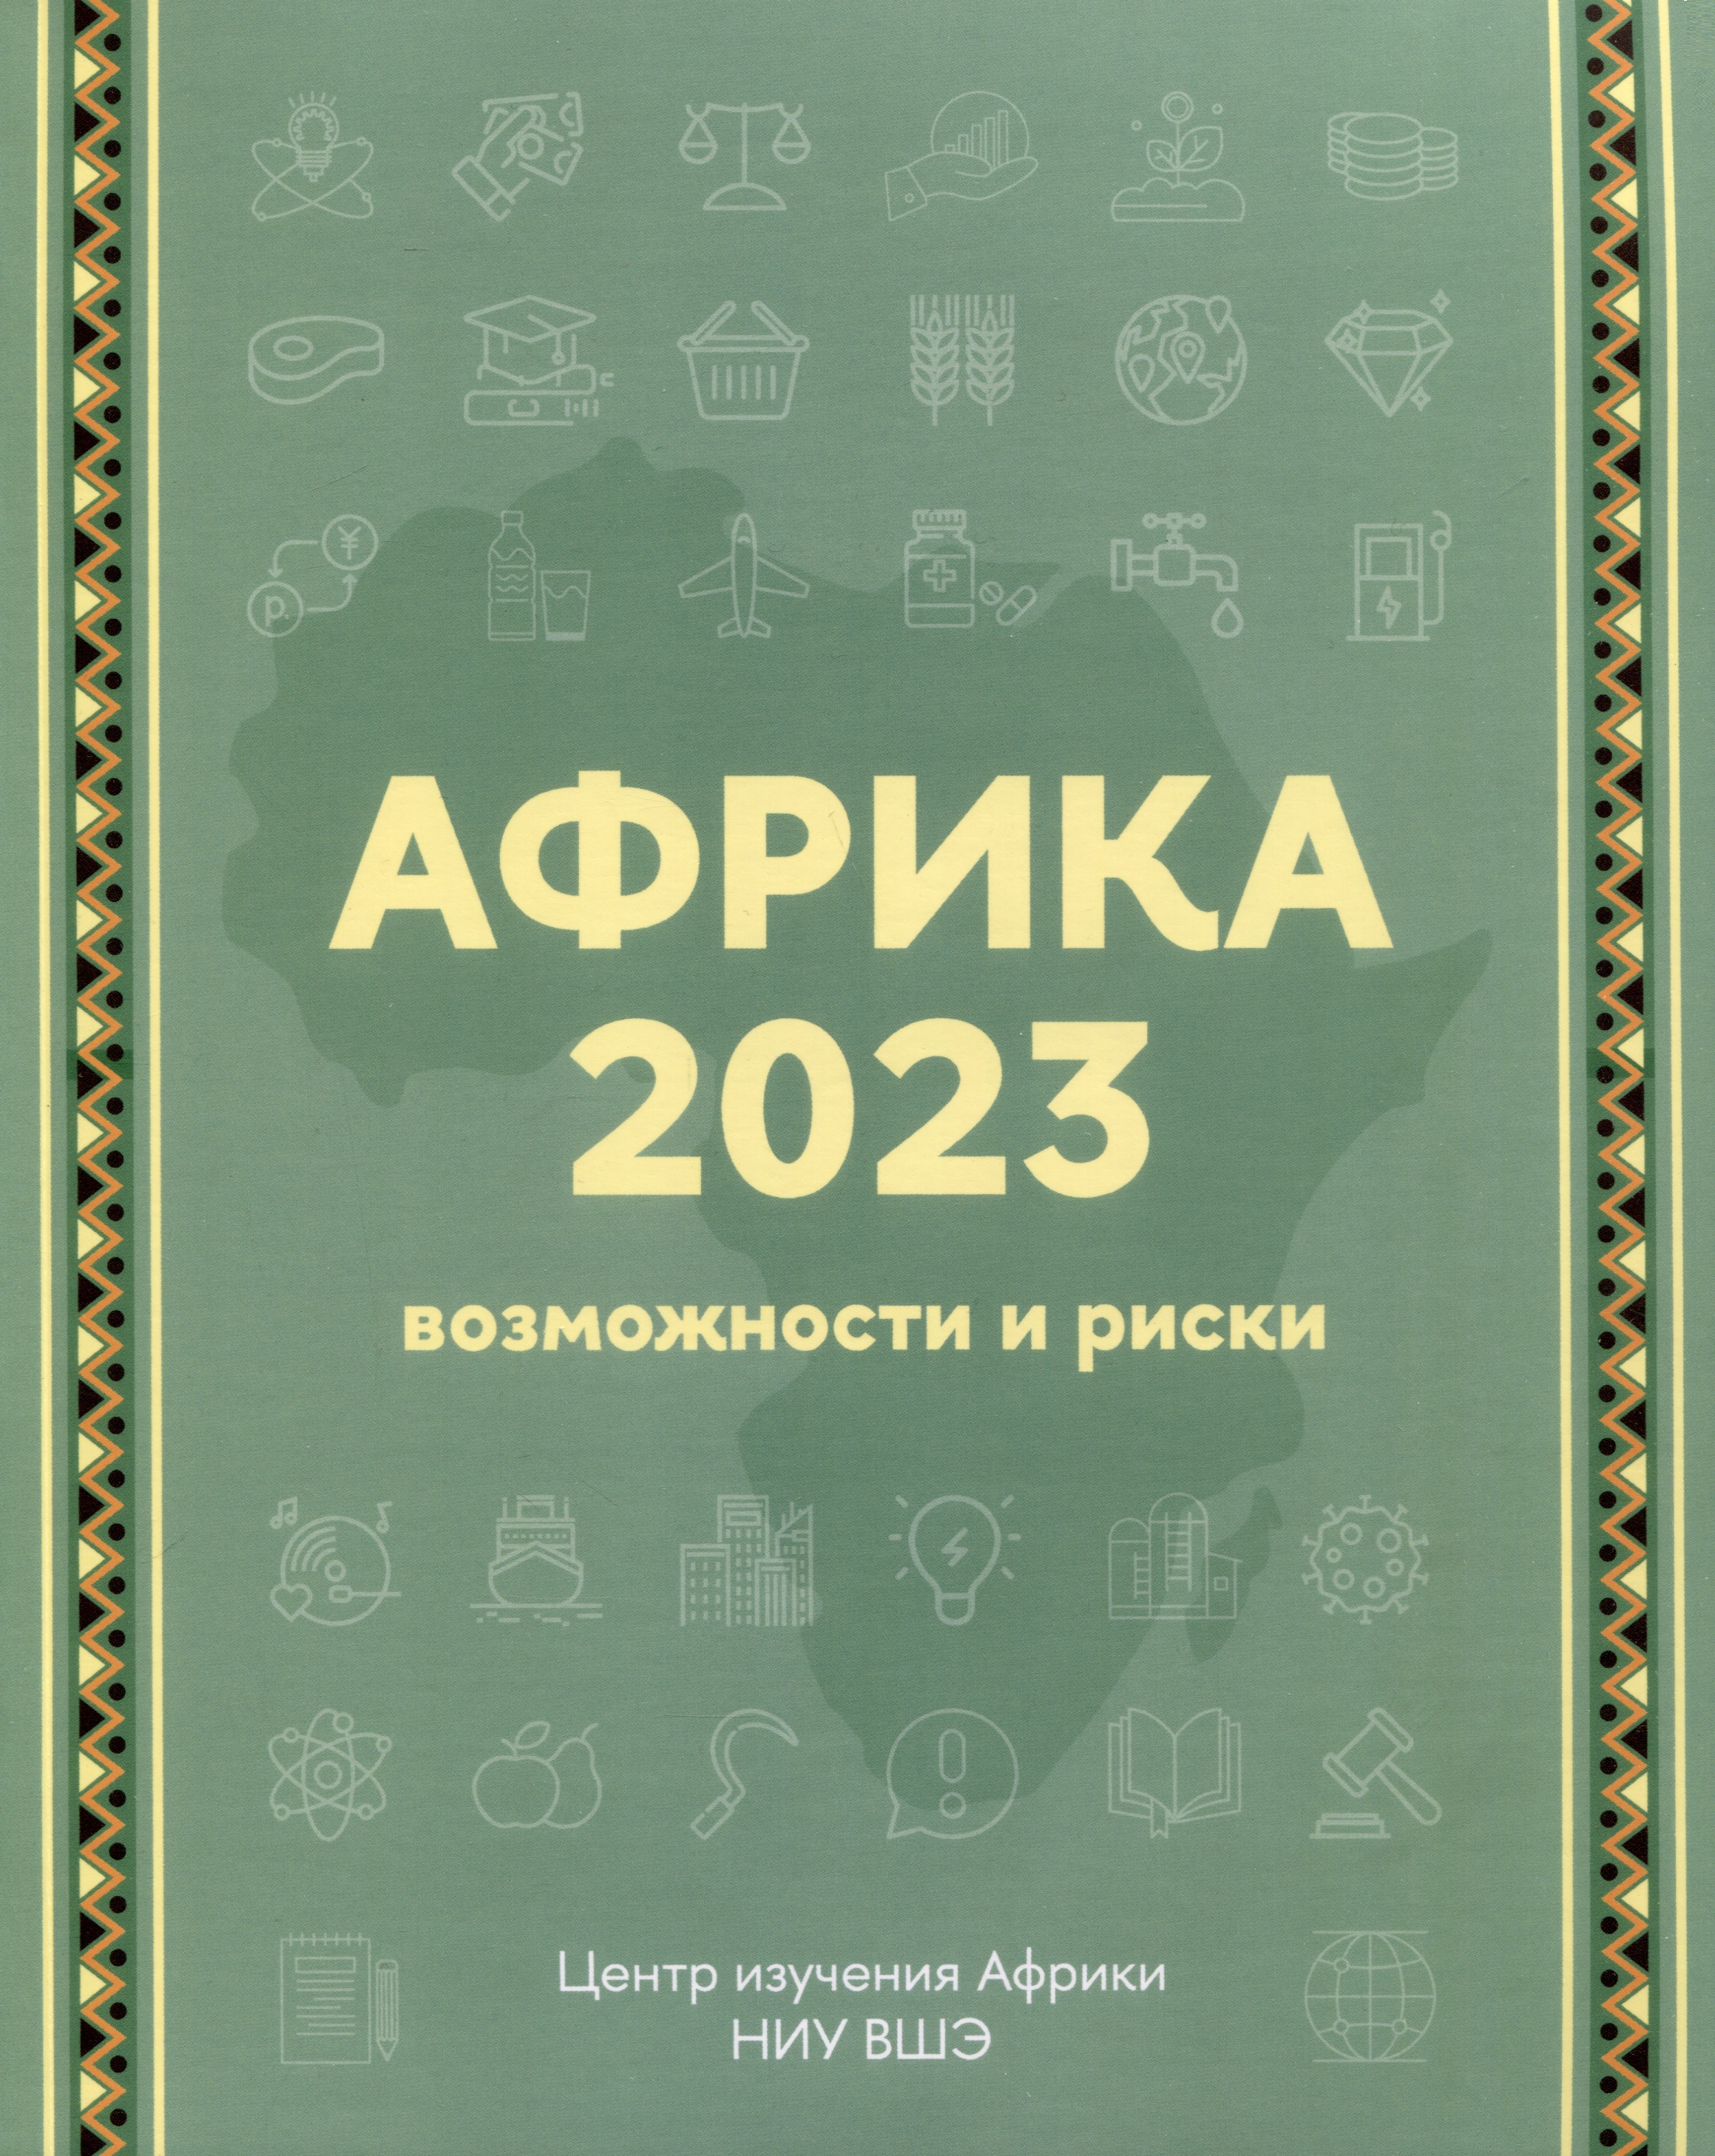  2023.   